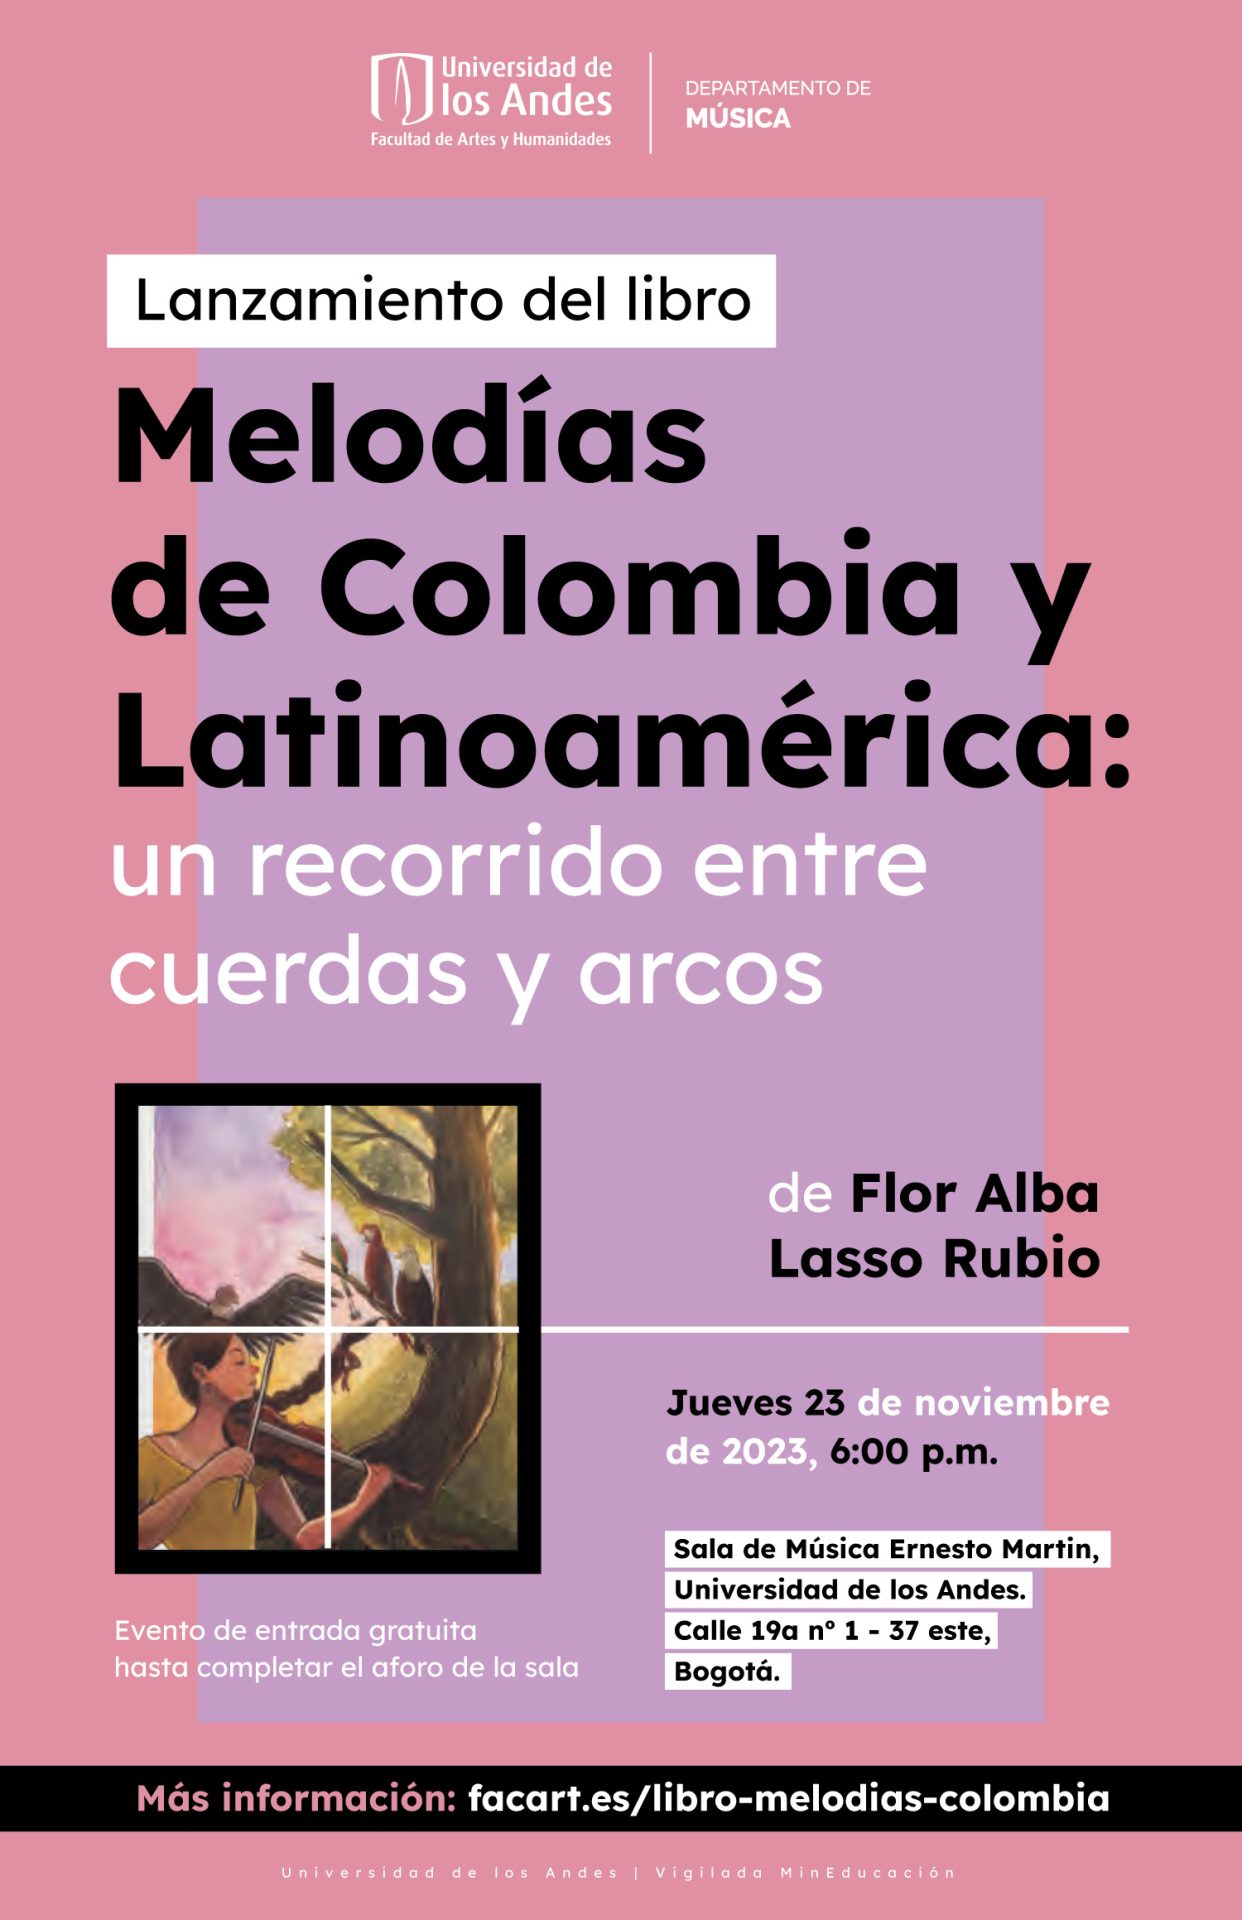 Jueves 23 de noviembre de 2023 a las 6:00 p.m. en la sala de música Ernesto Martin, Universidad de los Andes